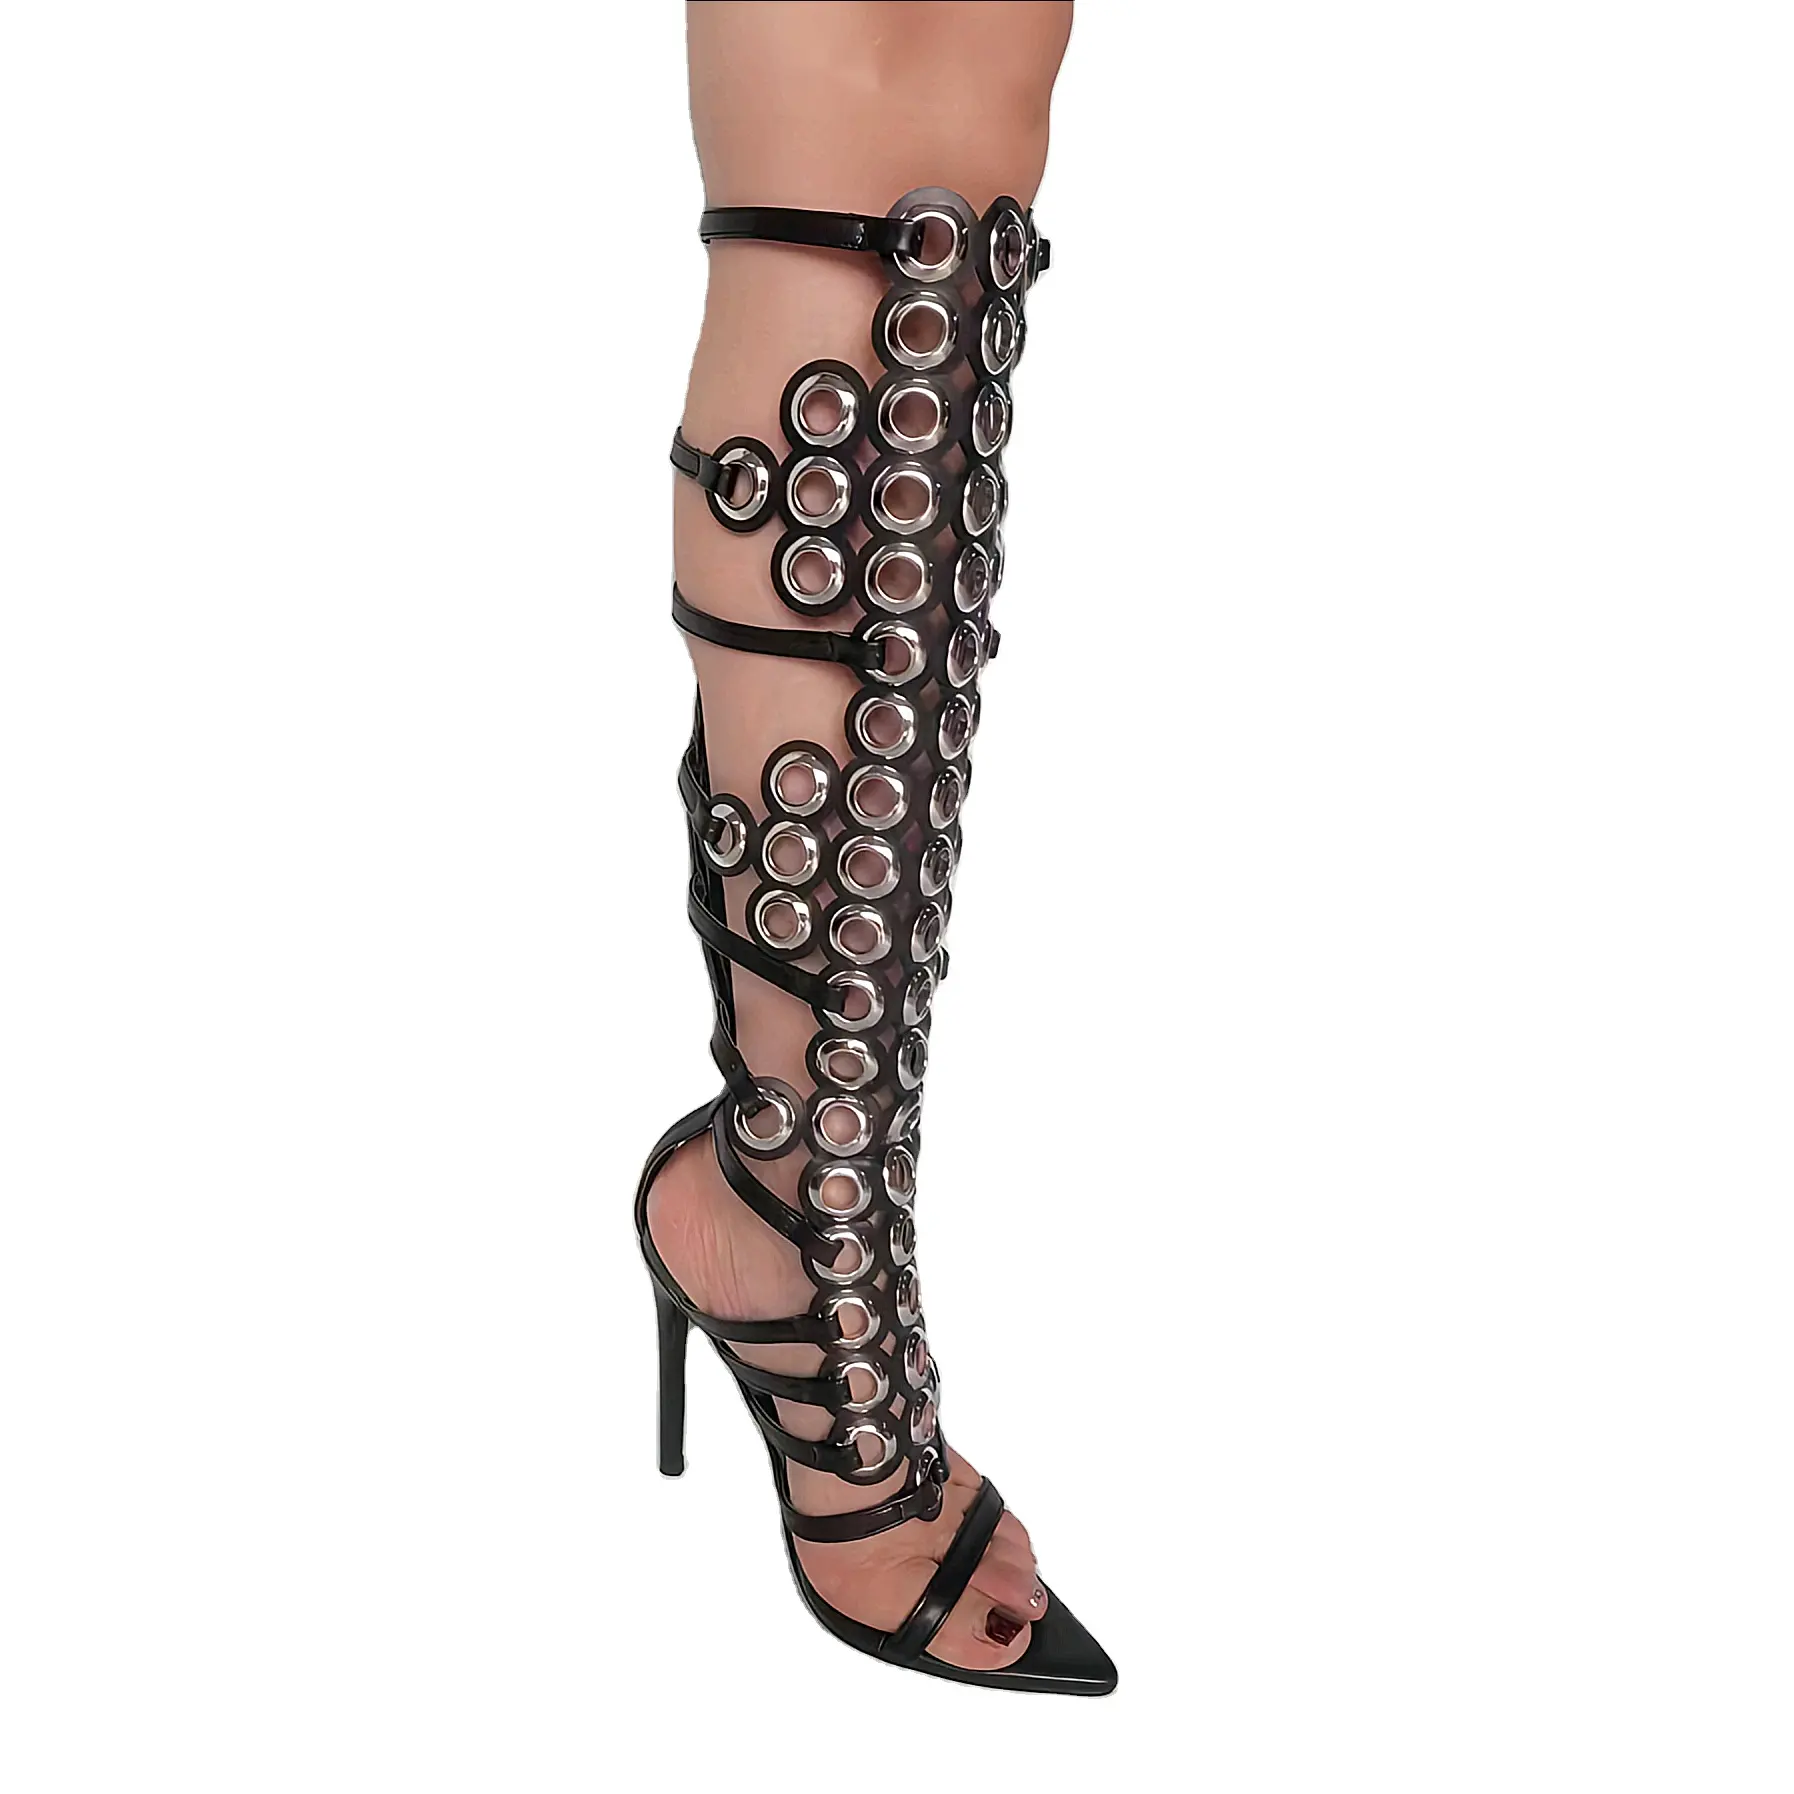 Ubililia - Sandália de salto alto para mulheres, com bico de metal cravejado, salto agulha acima do joelho, sandália de gladiador para mulheres, ideal para uso em festas e festas